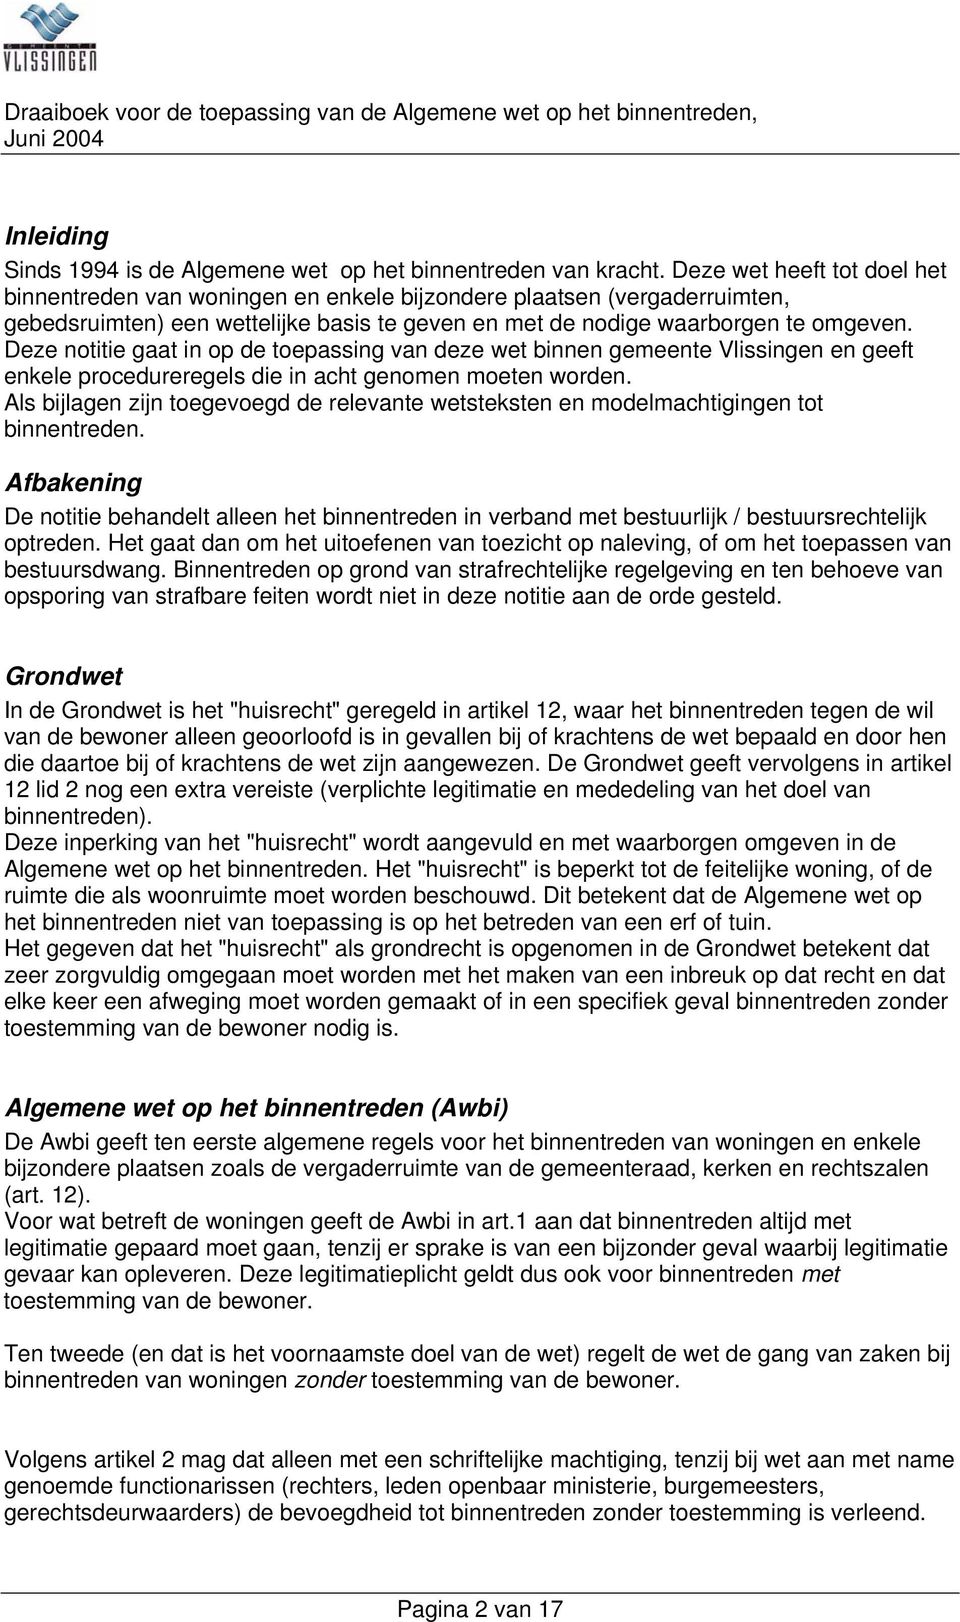 Deze notitie gaat in op de toepassing van deze wet binnen gemeente Vlissingen en geeft enkele procedureregels die in acht genomen moeten worden.